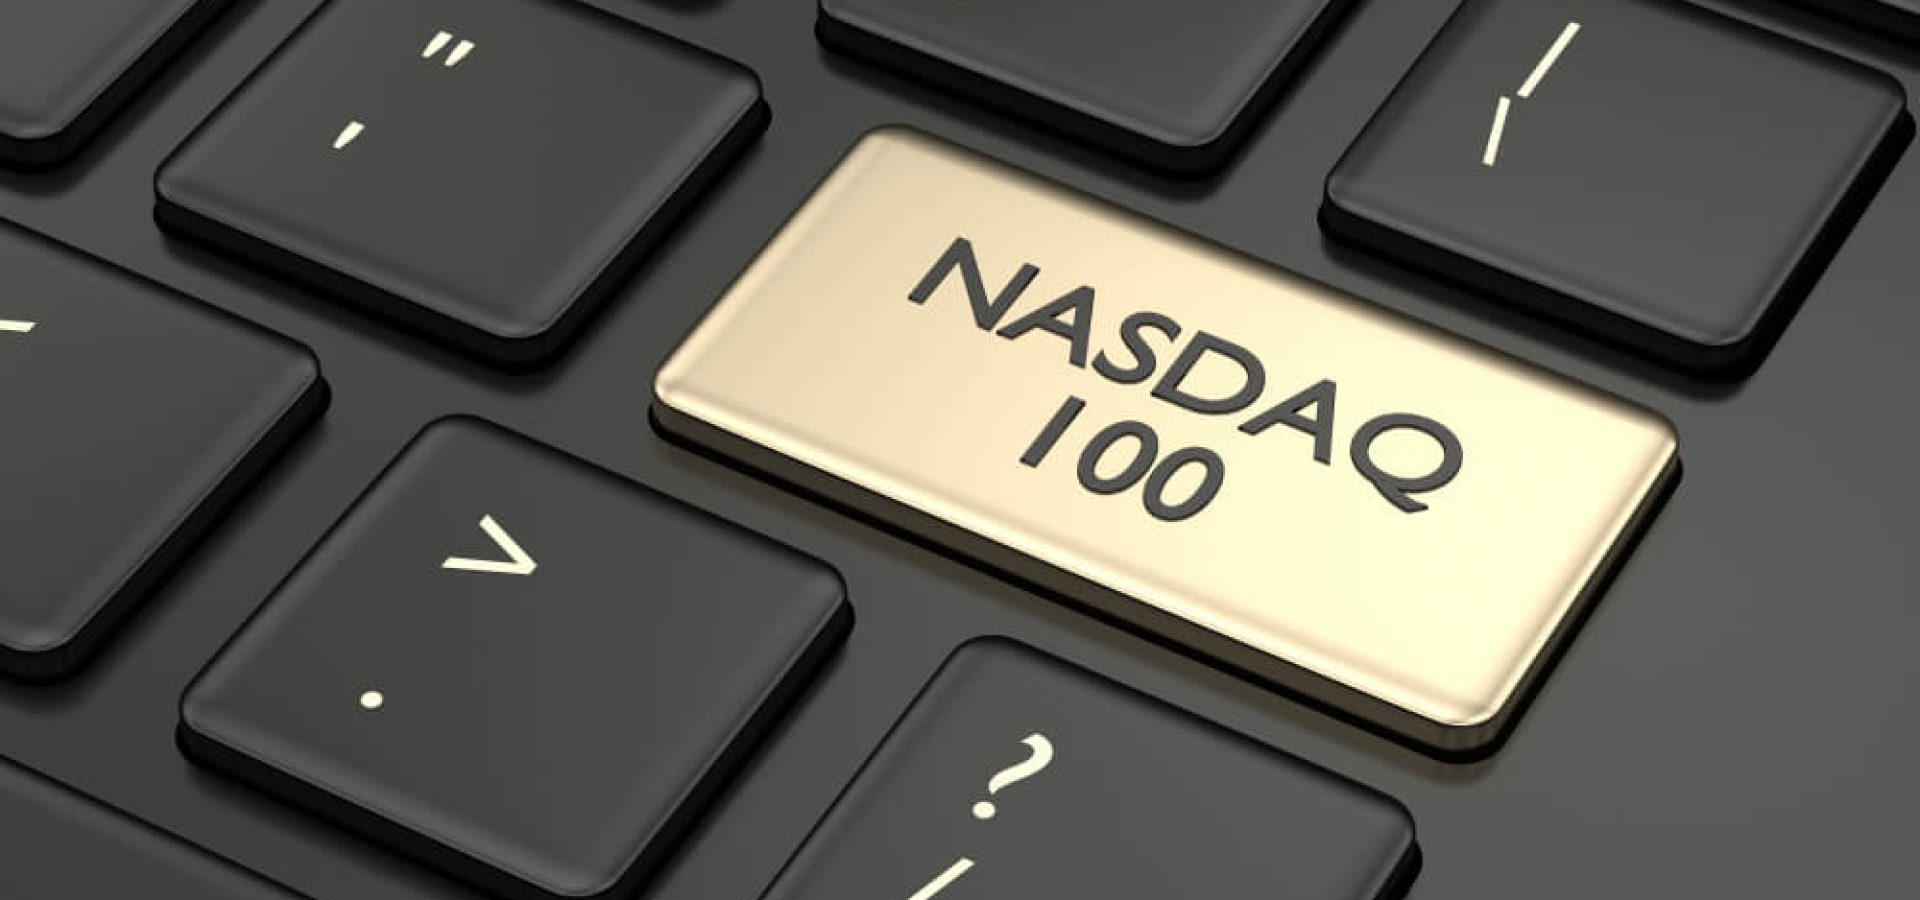 NASDAQ 100 on keyboard..